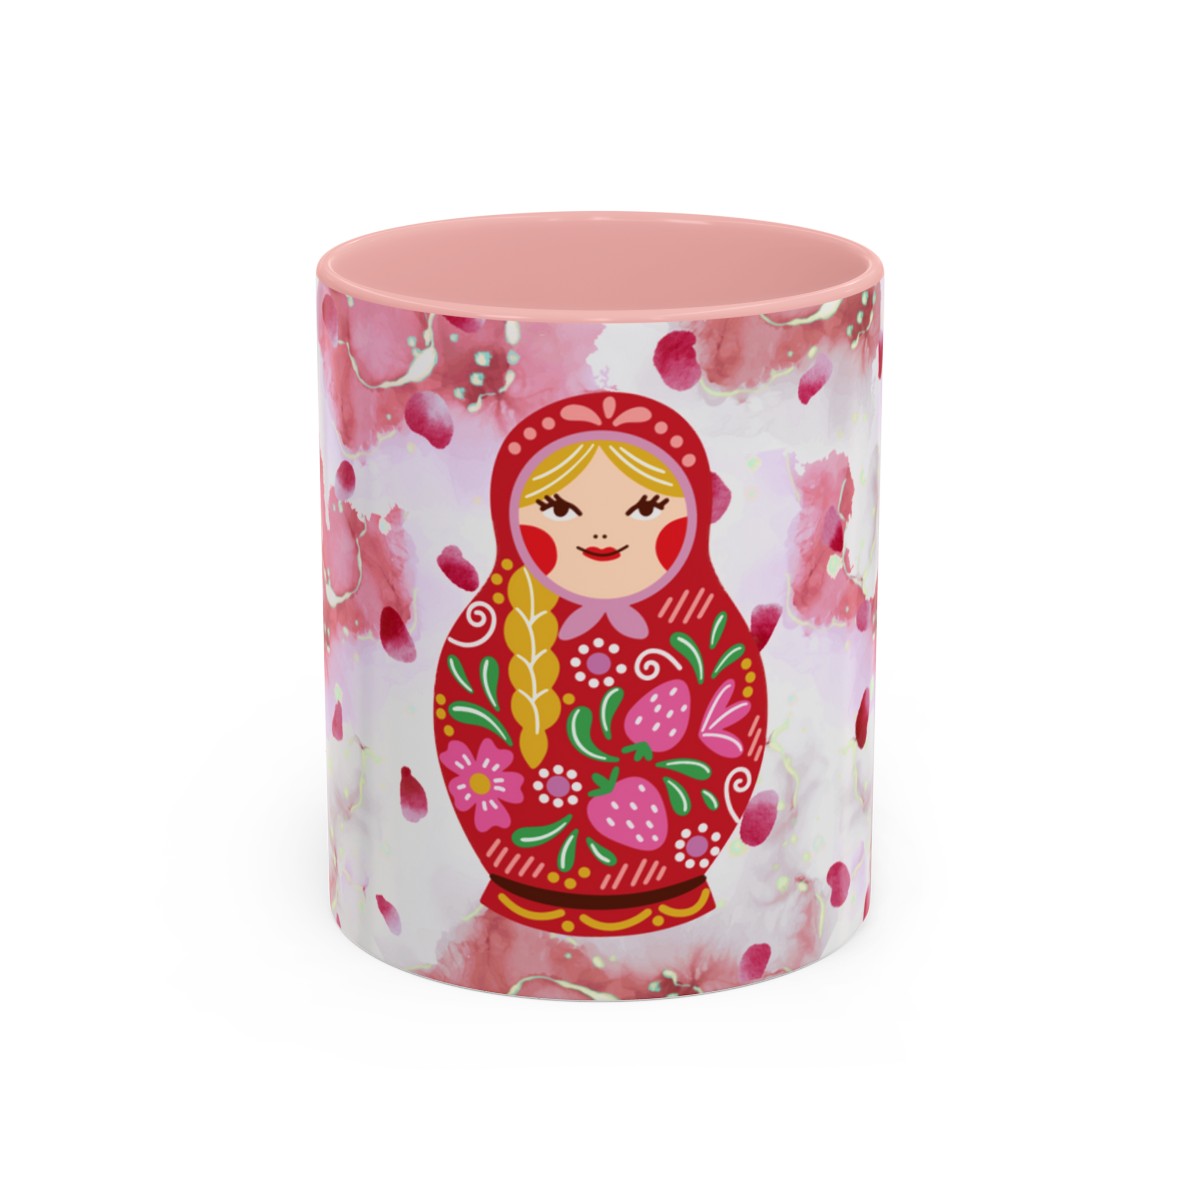 Russian Doll Mug product thumbnail image